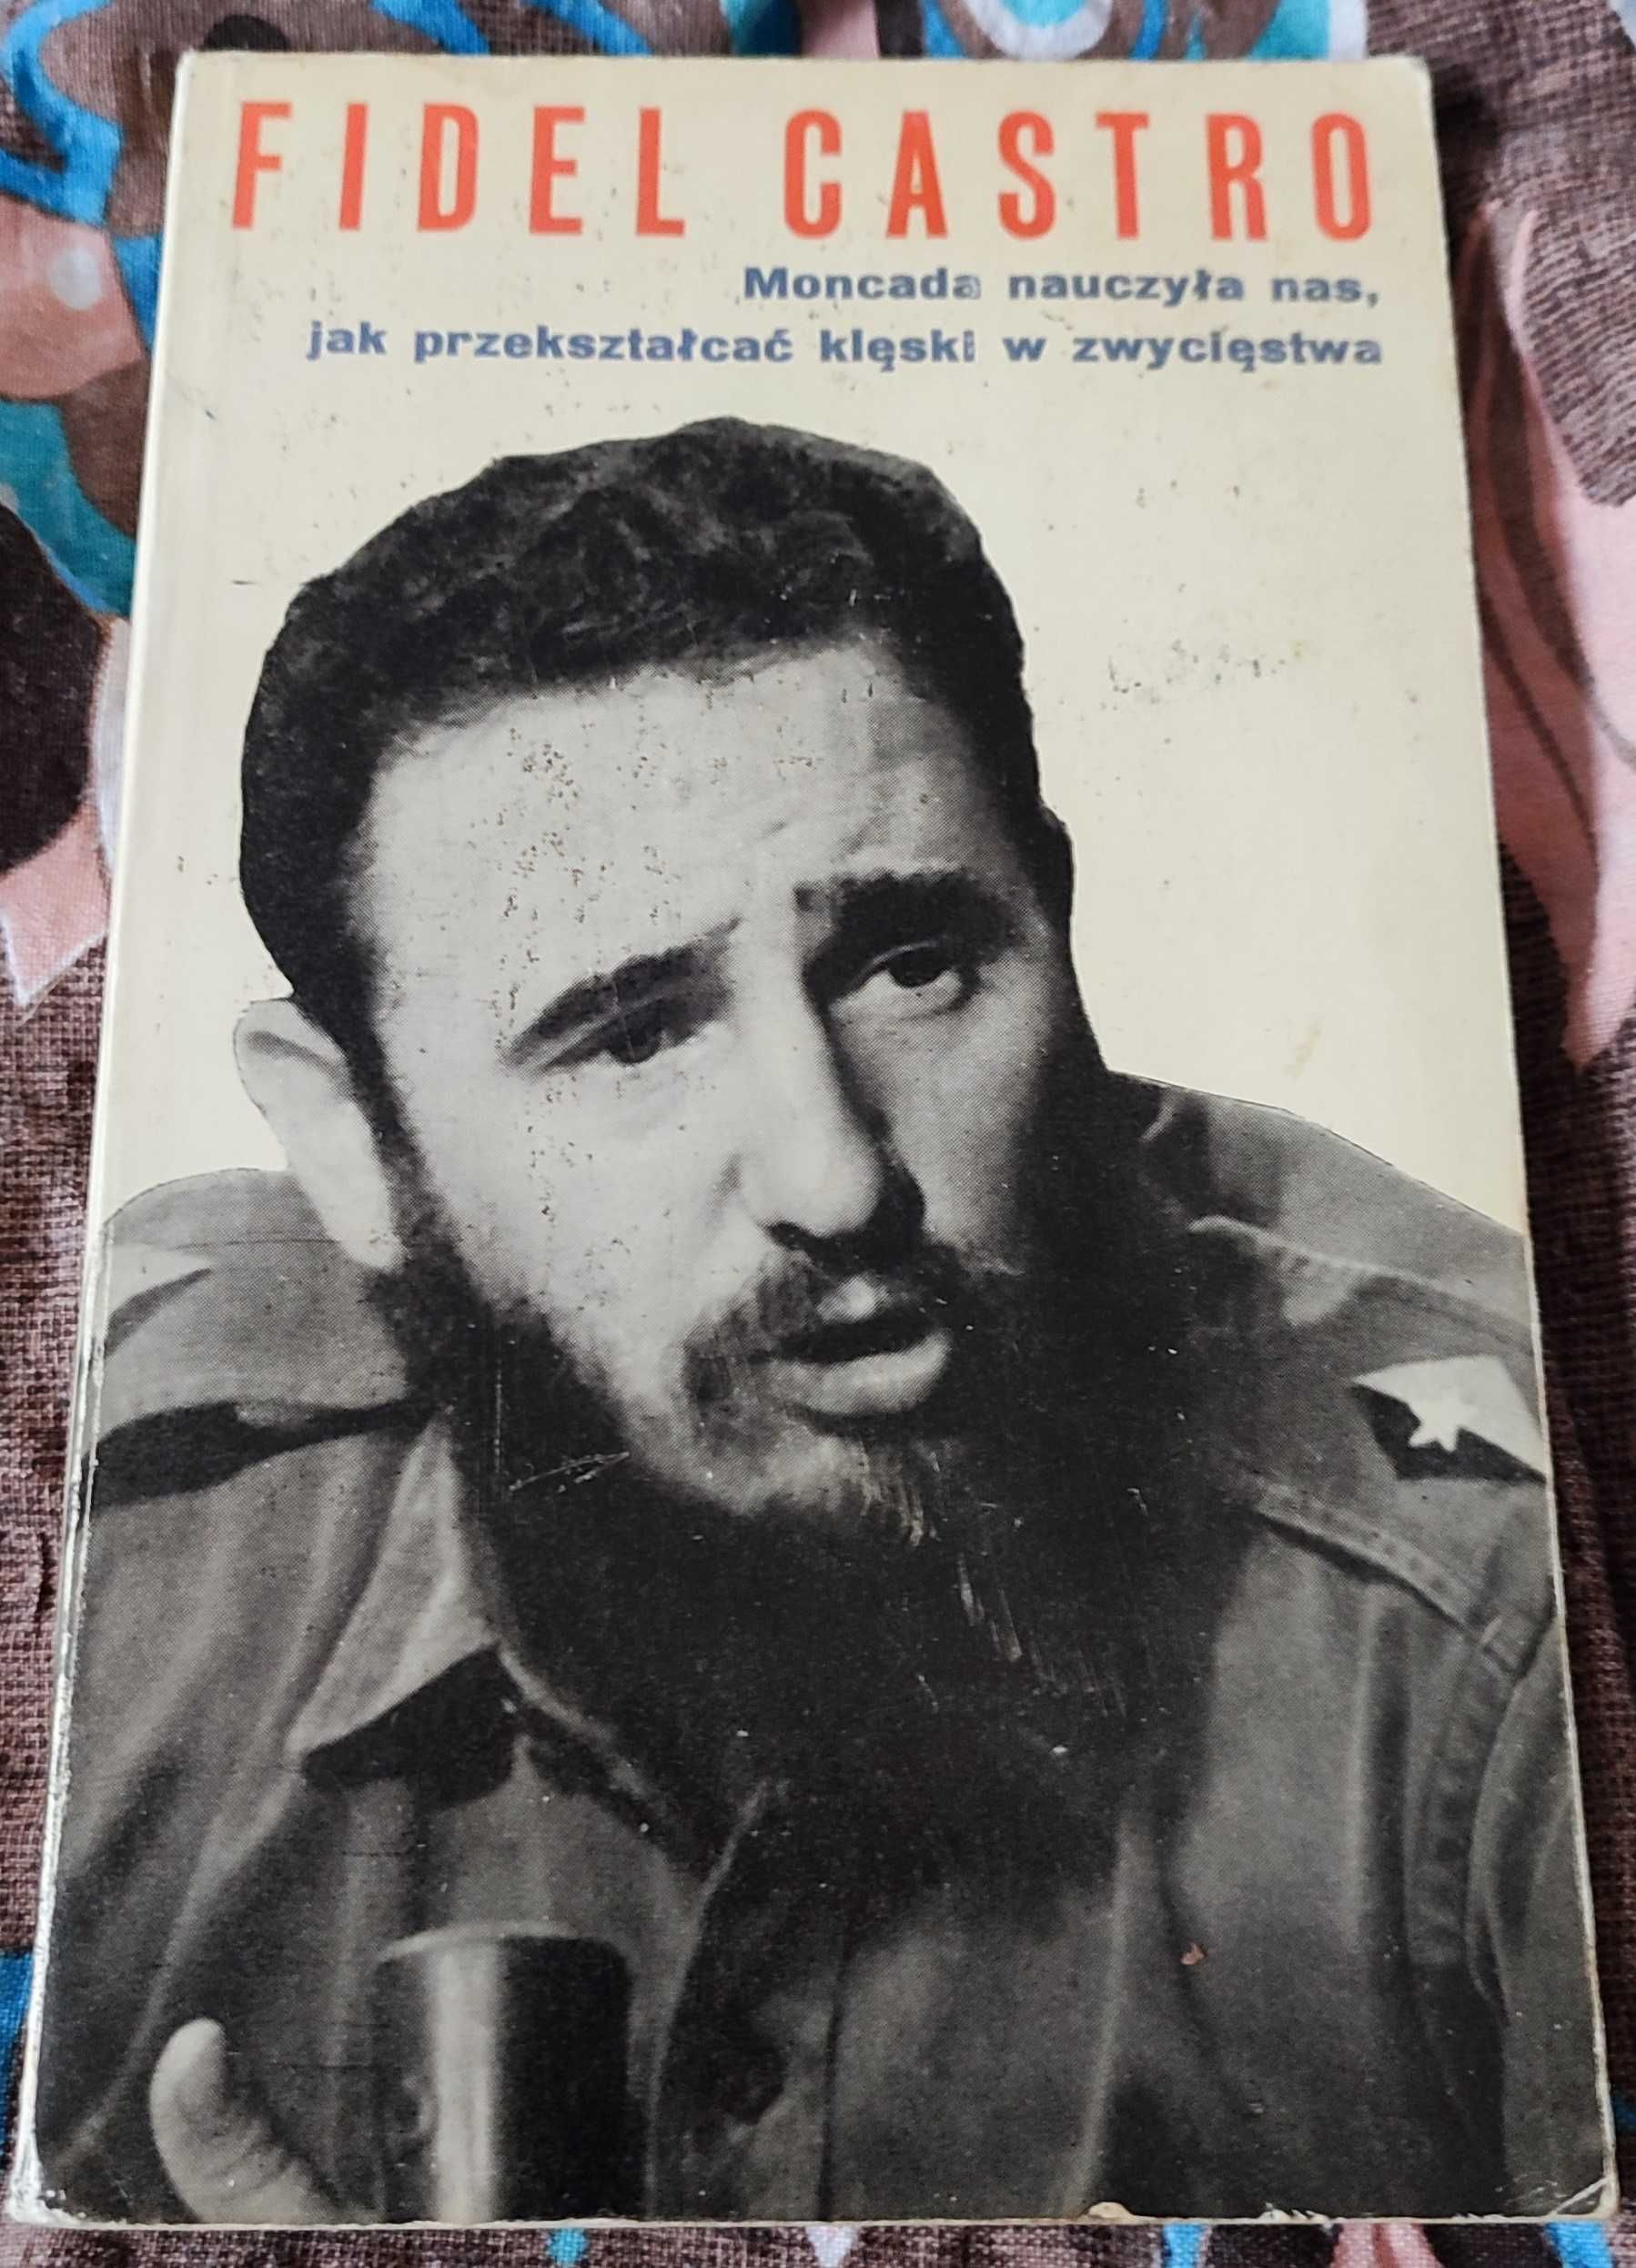 Moncada nauczyła nas jak przekształcać klęski zwycięstwa Fidel Castro